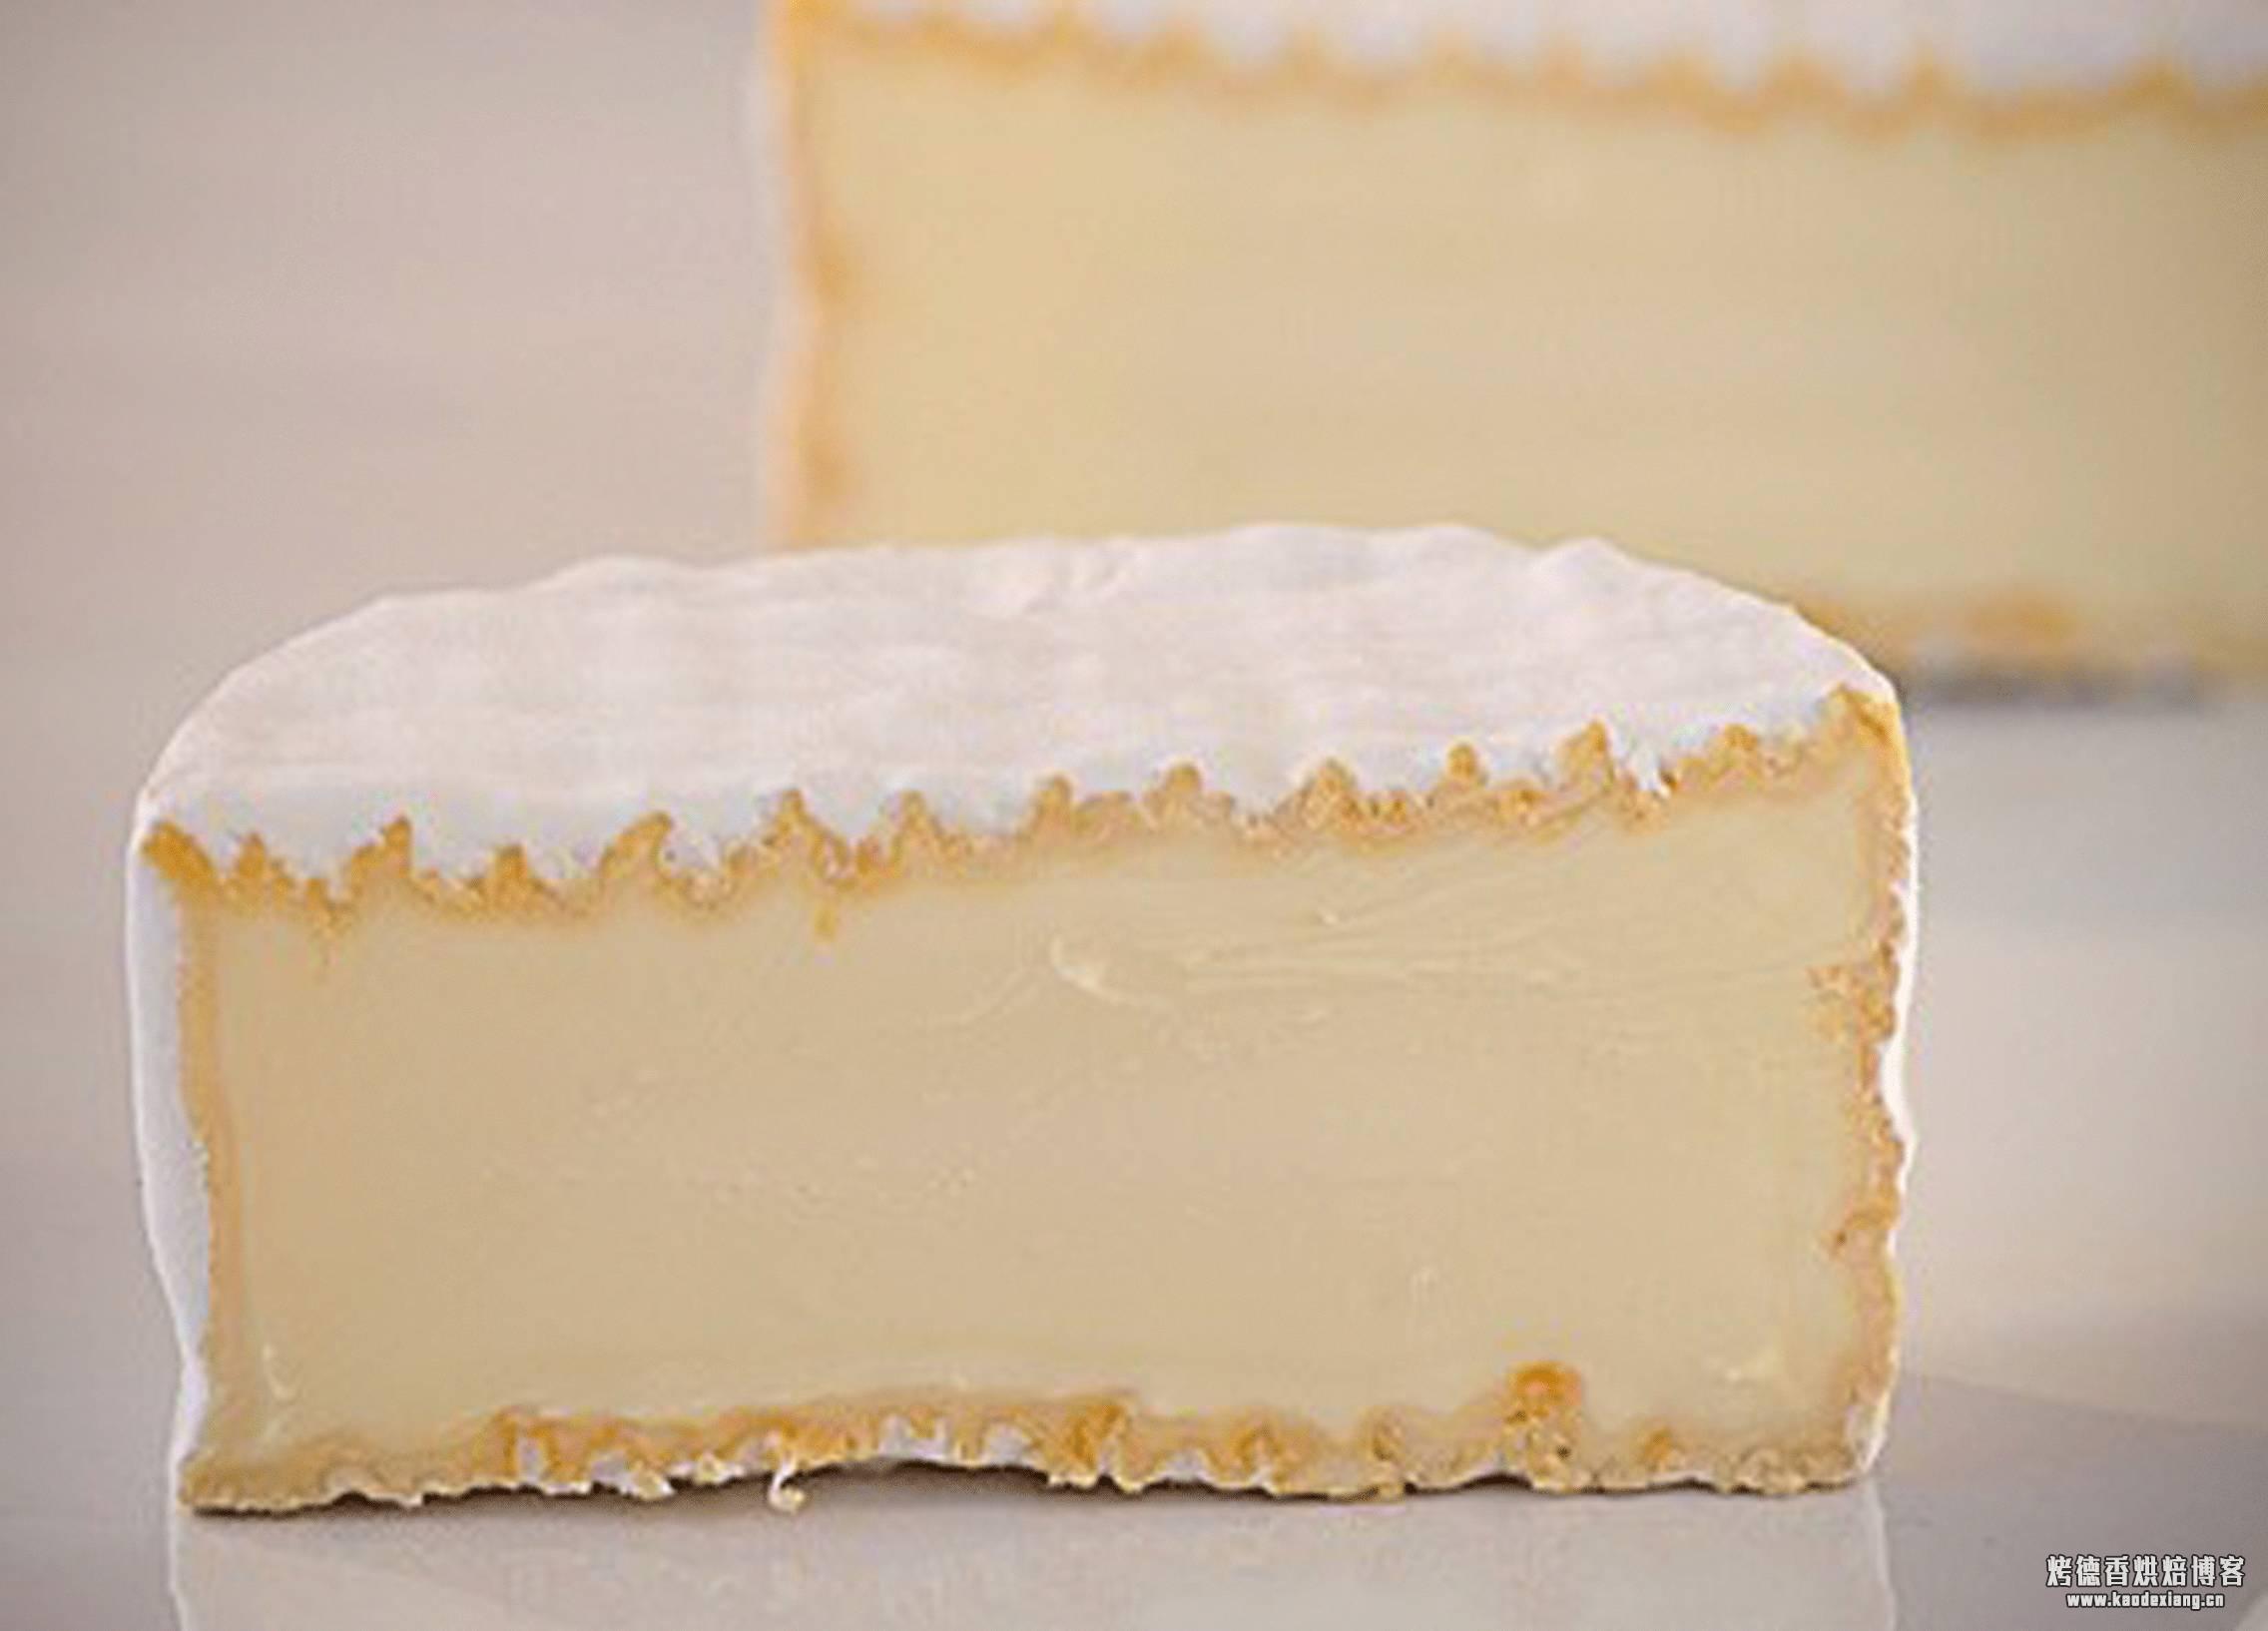 牛奶 奶酪 奶酪片 牛奶产品 食品 健康 维生素 钙 喝图片下载 - 觅知网